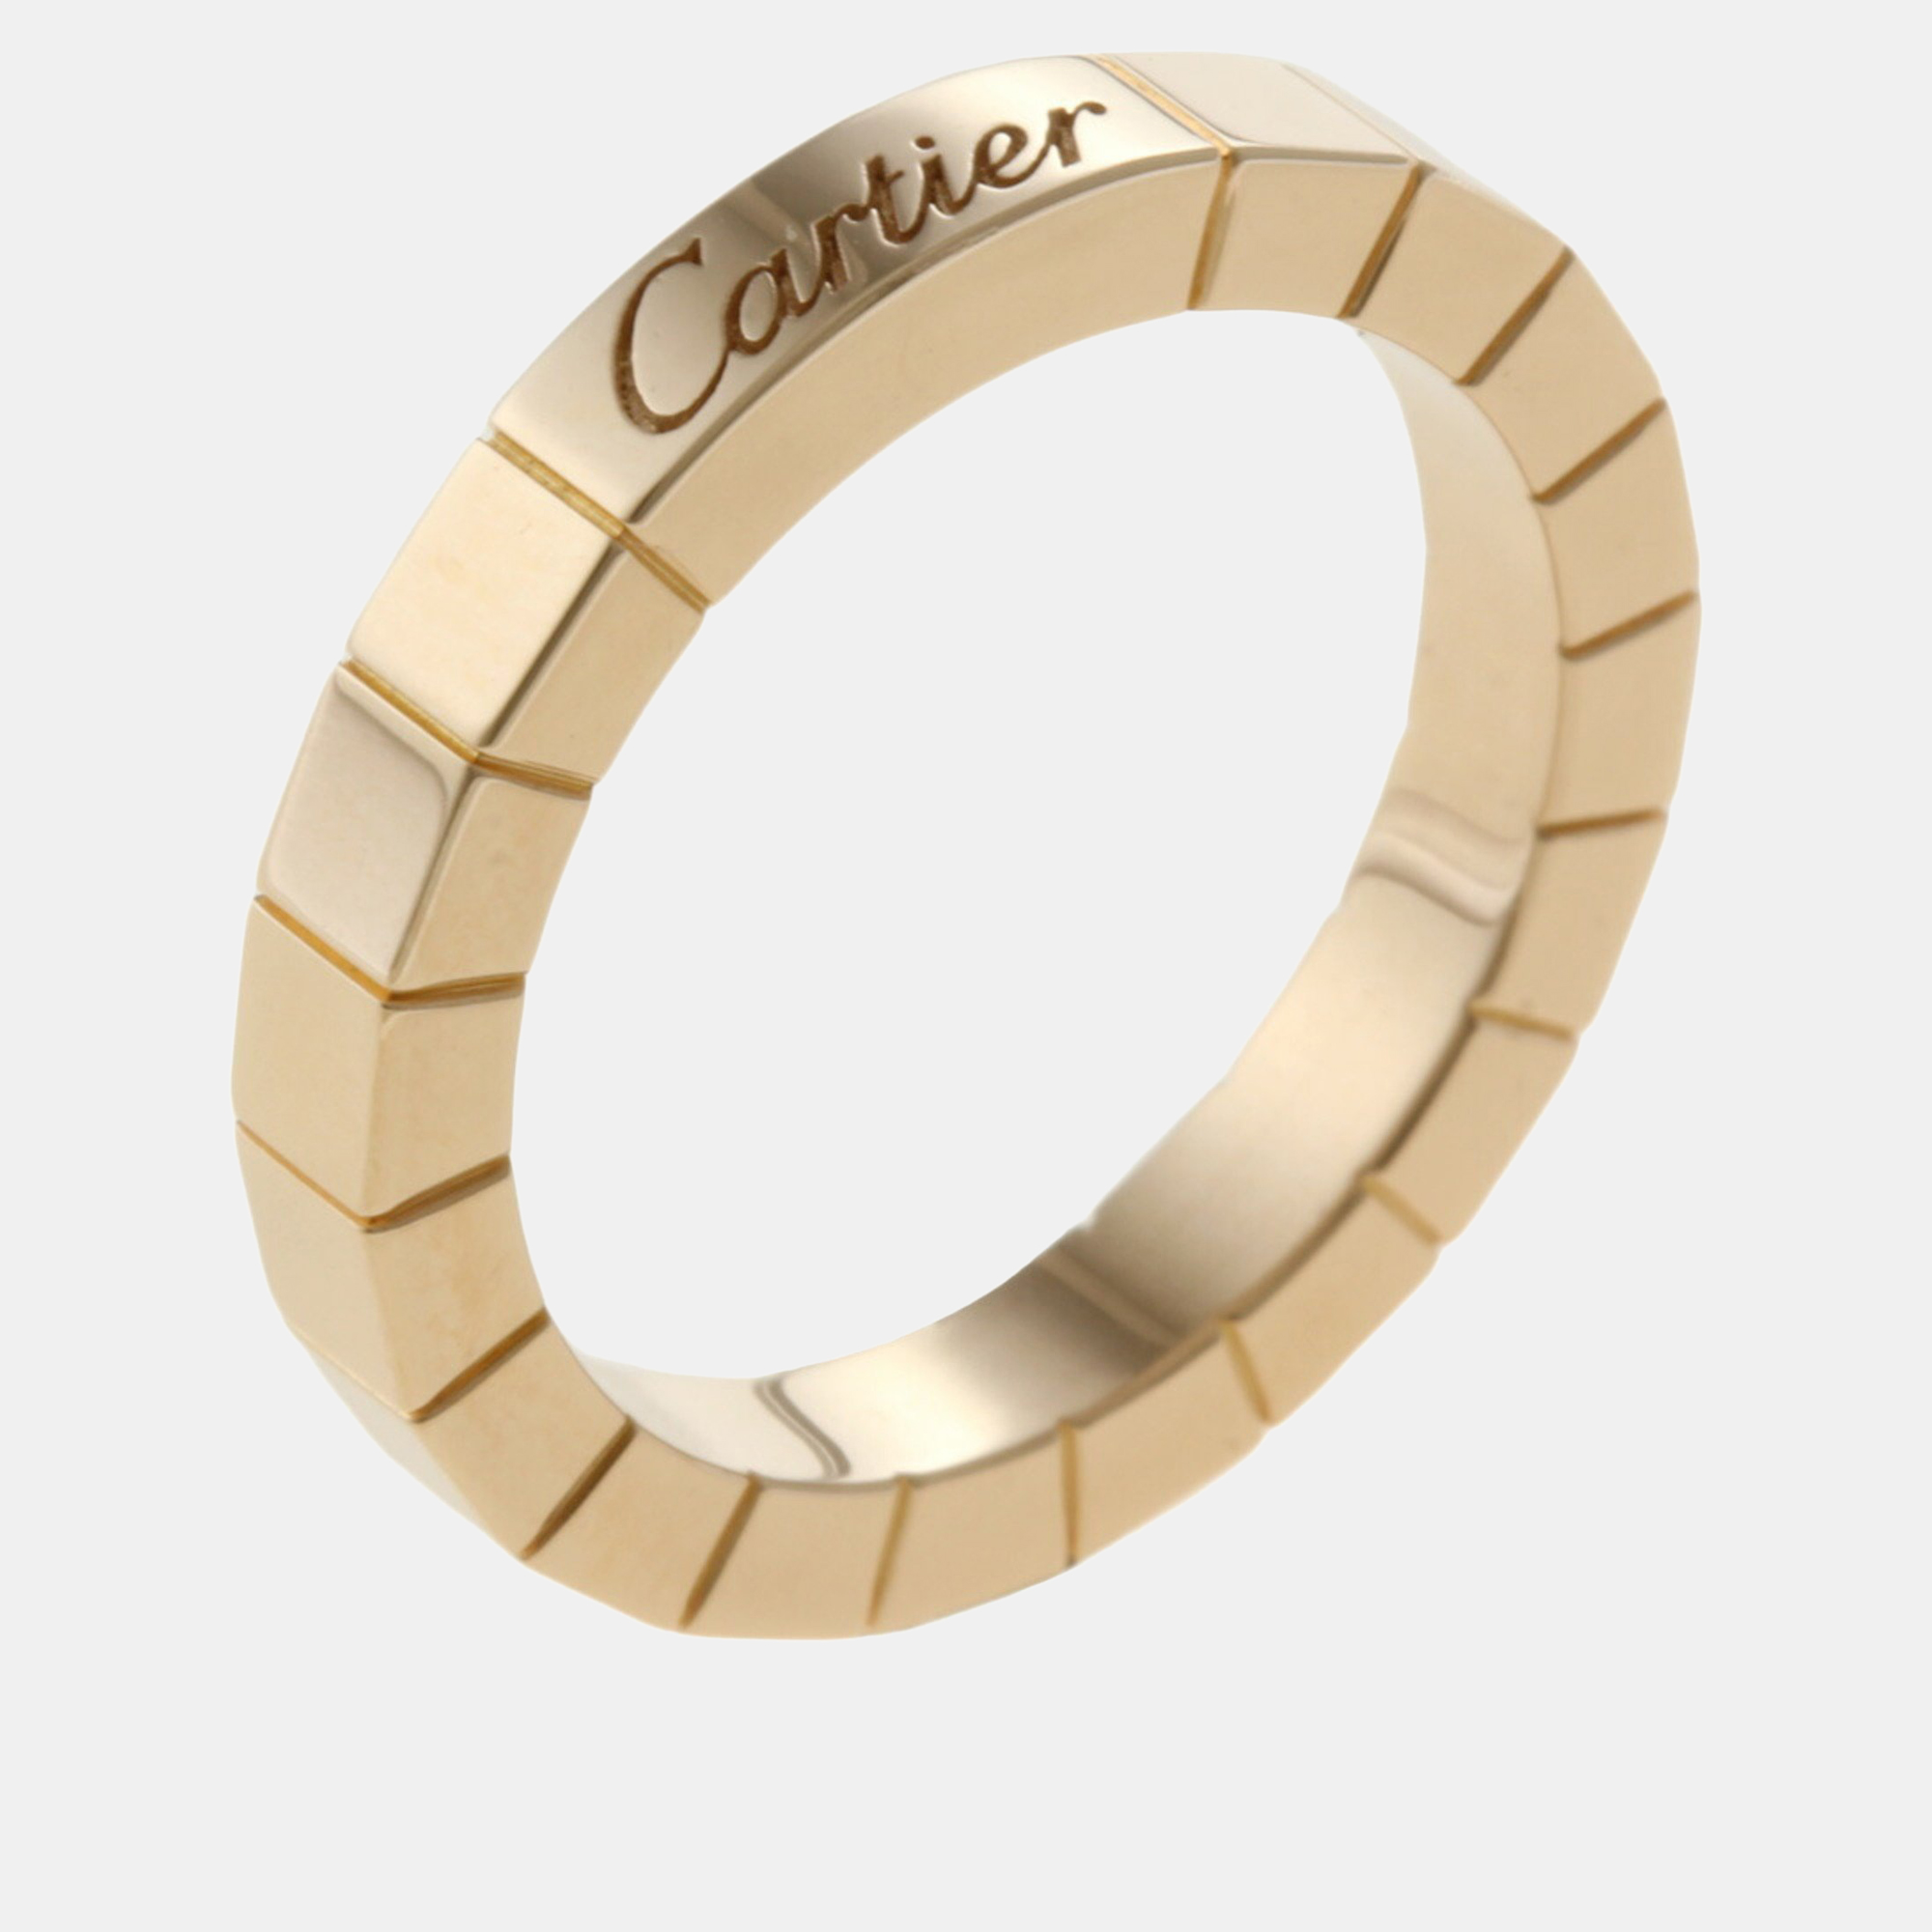 Cartier 18K Rose Gold Laniere Band Ring EU 49